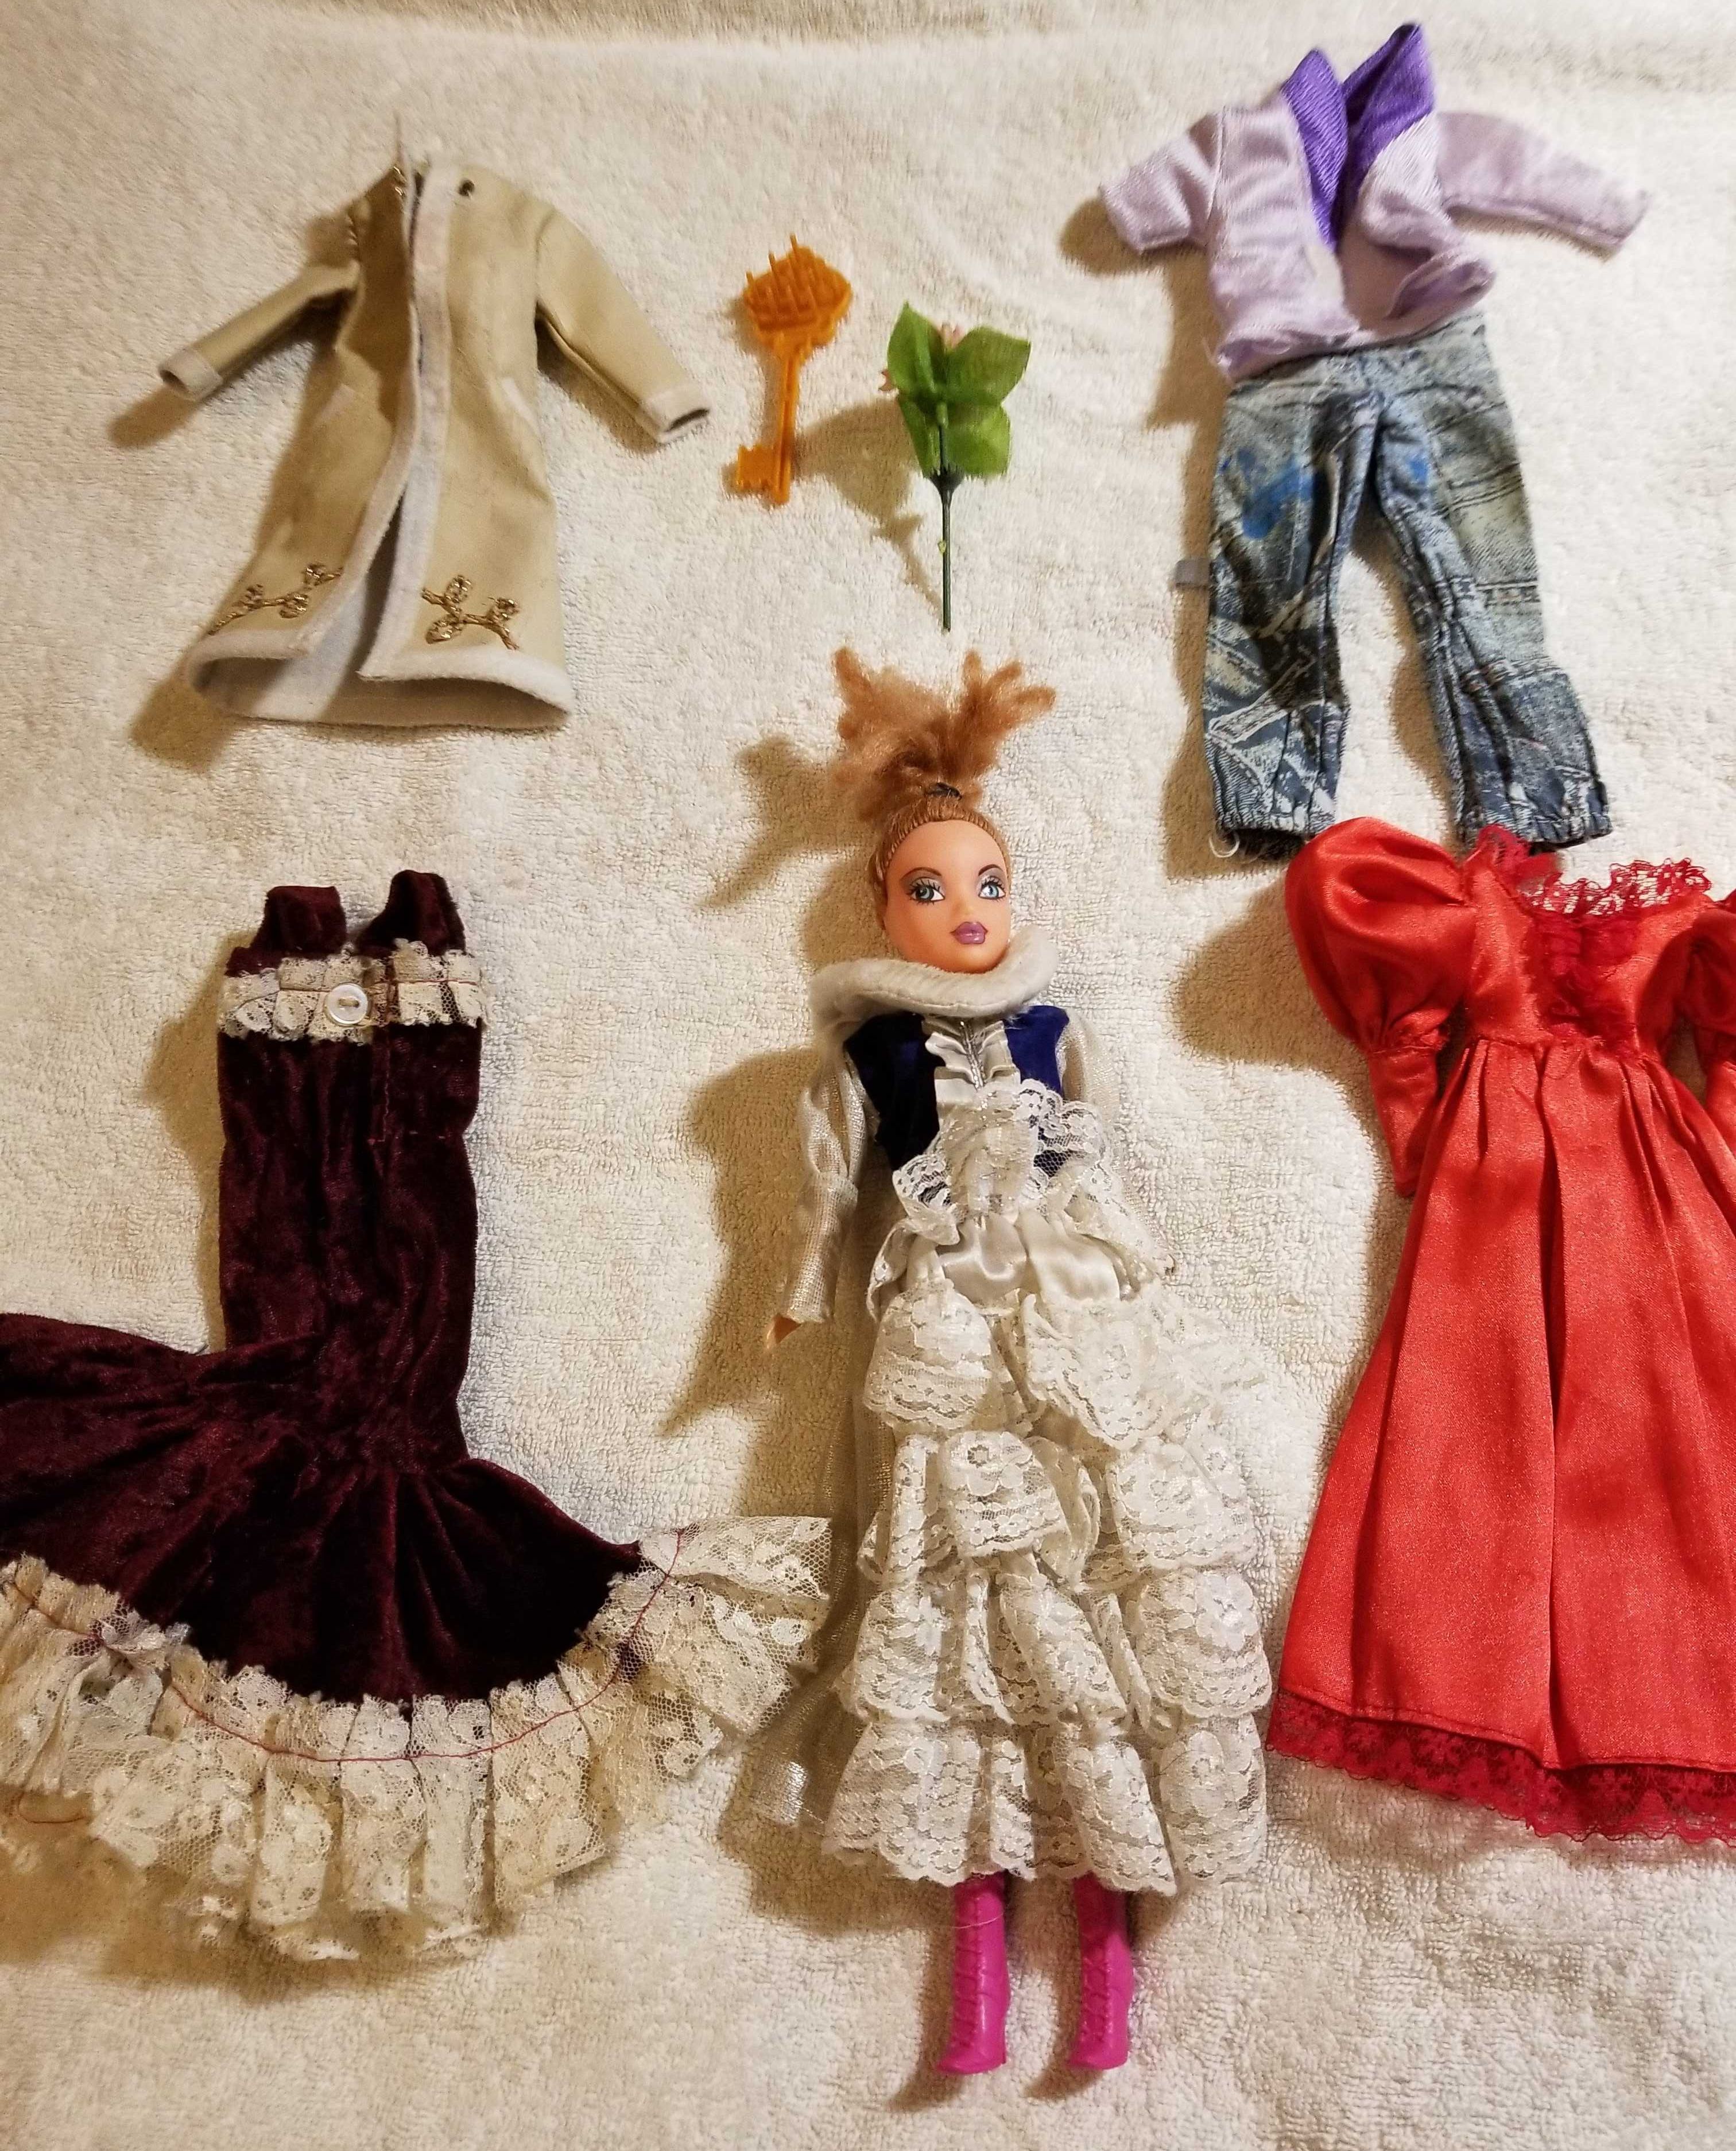 КУКЛА с розой (одежда, обувь, аксессуары) рост куклы - 30 см